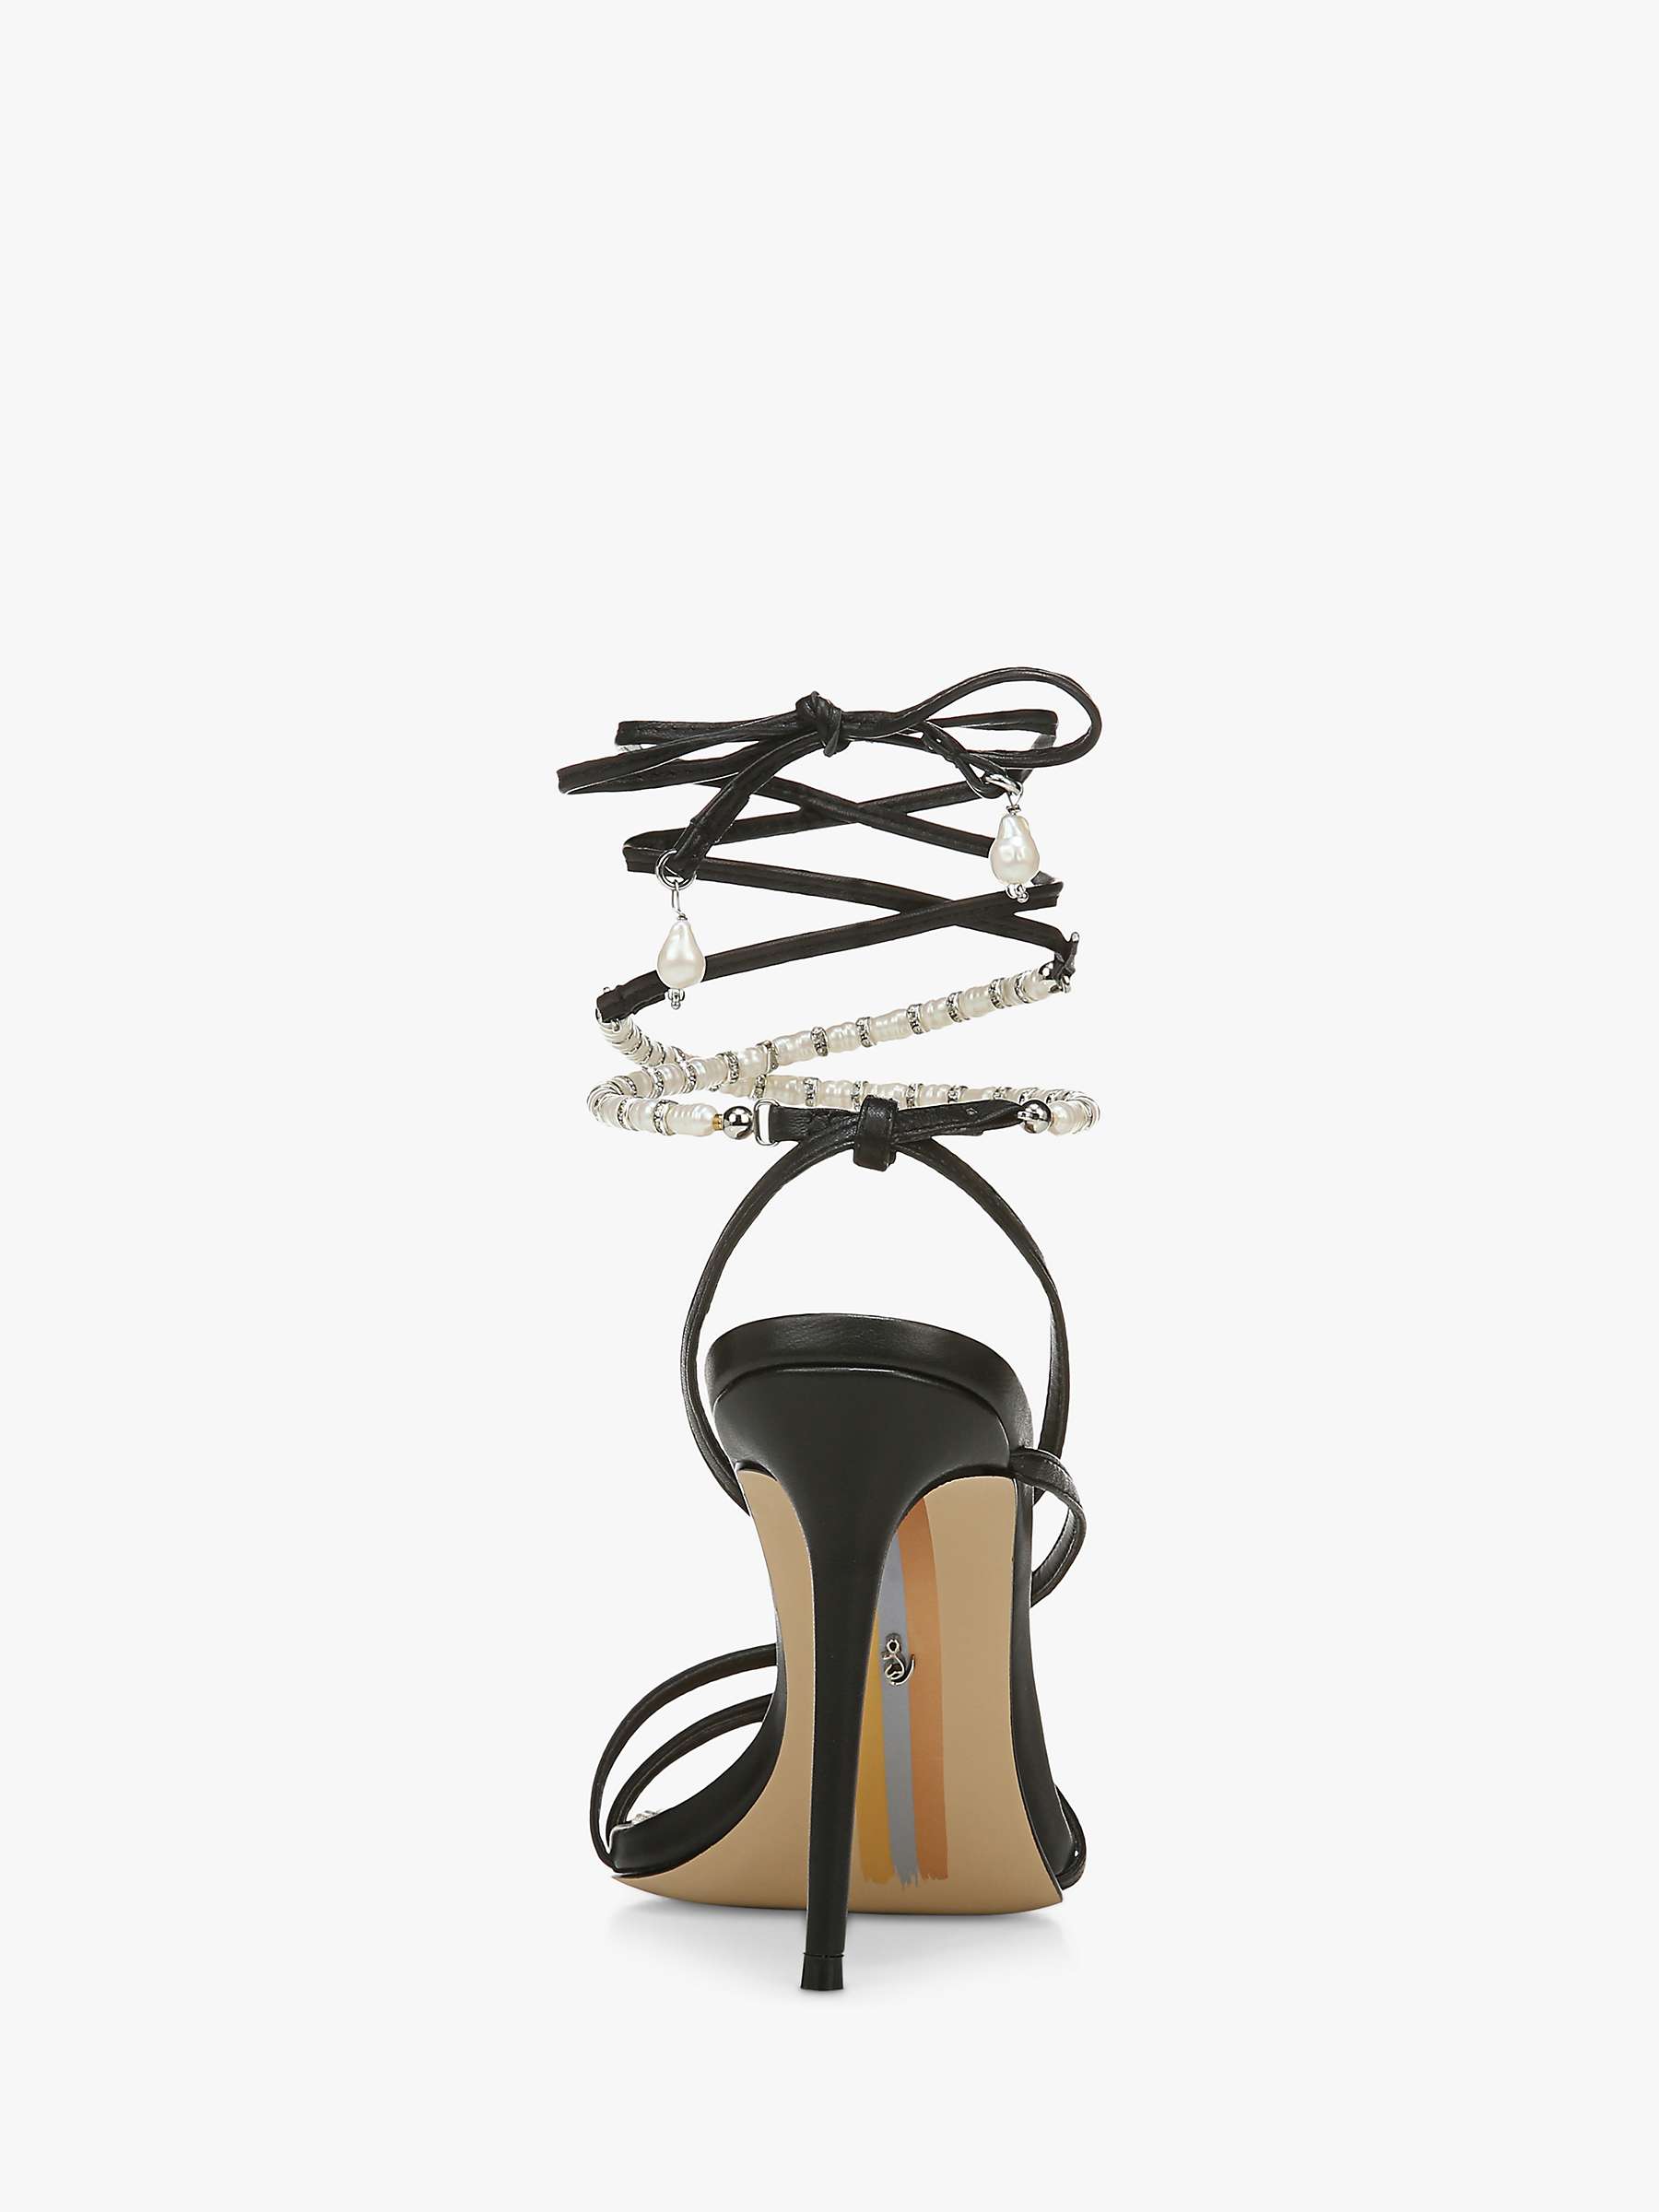 Buy Sam Edelman Scarlette Embellished Tie Strap Heeled Sandals, Black Online at johnlewis.com